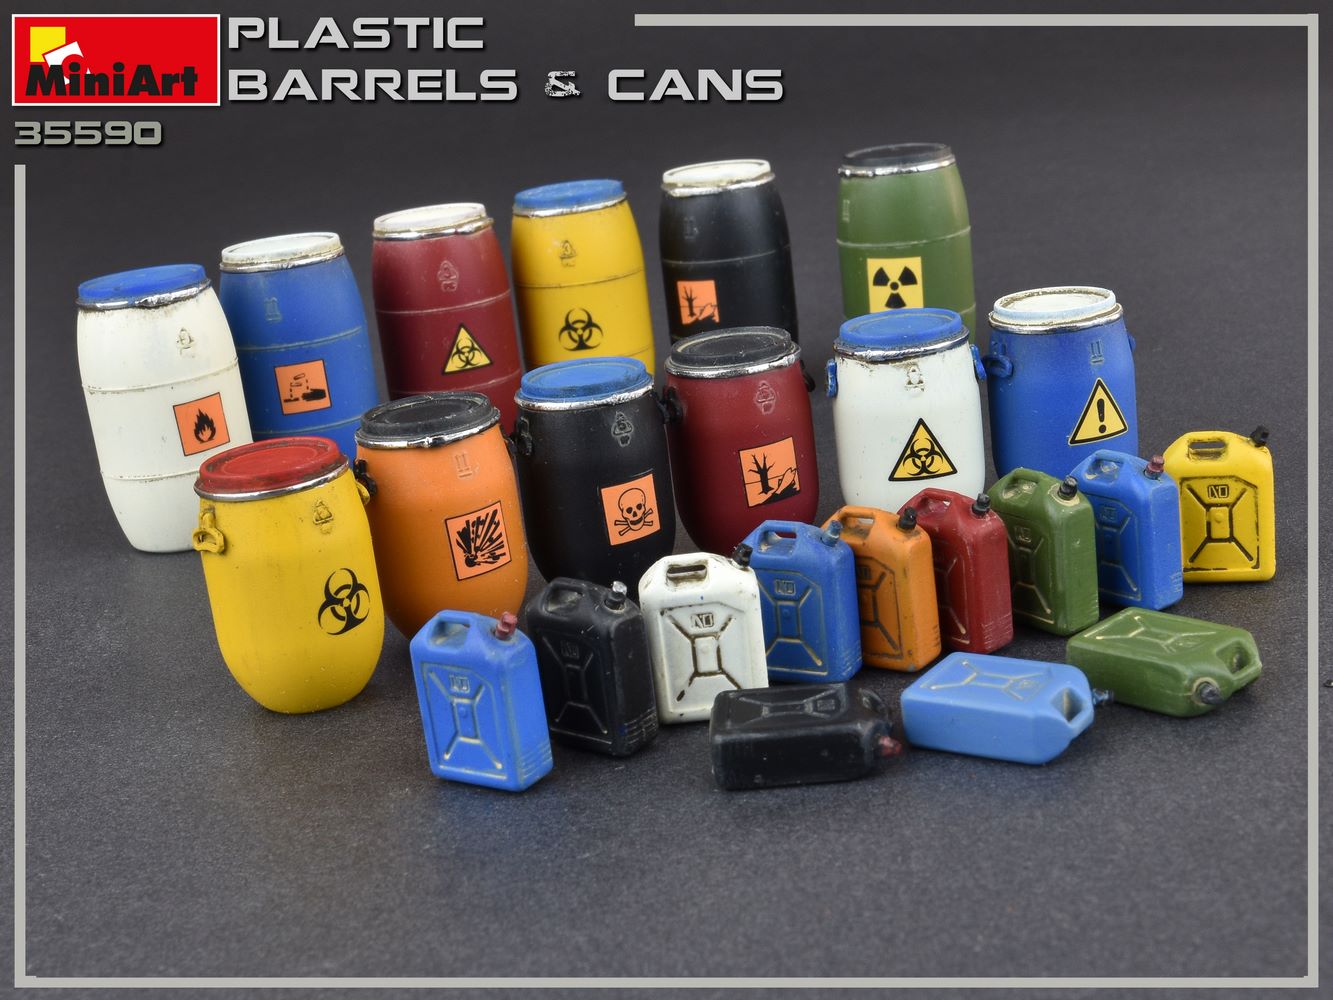 Miniart 1:35 Plastic Barrells & Cans